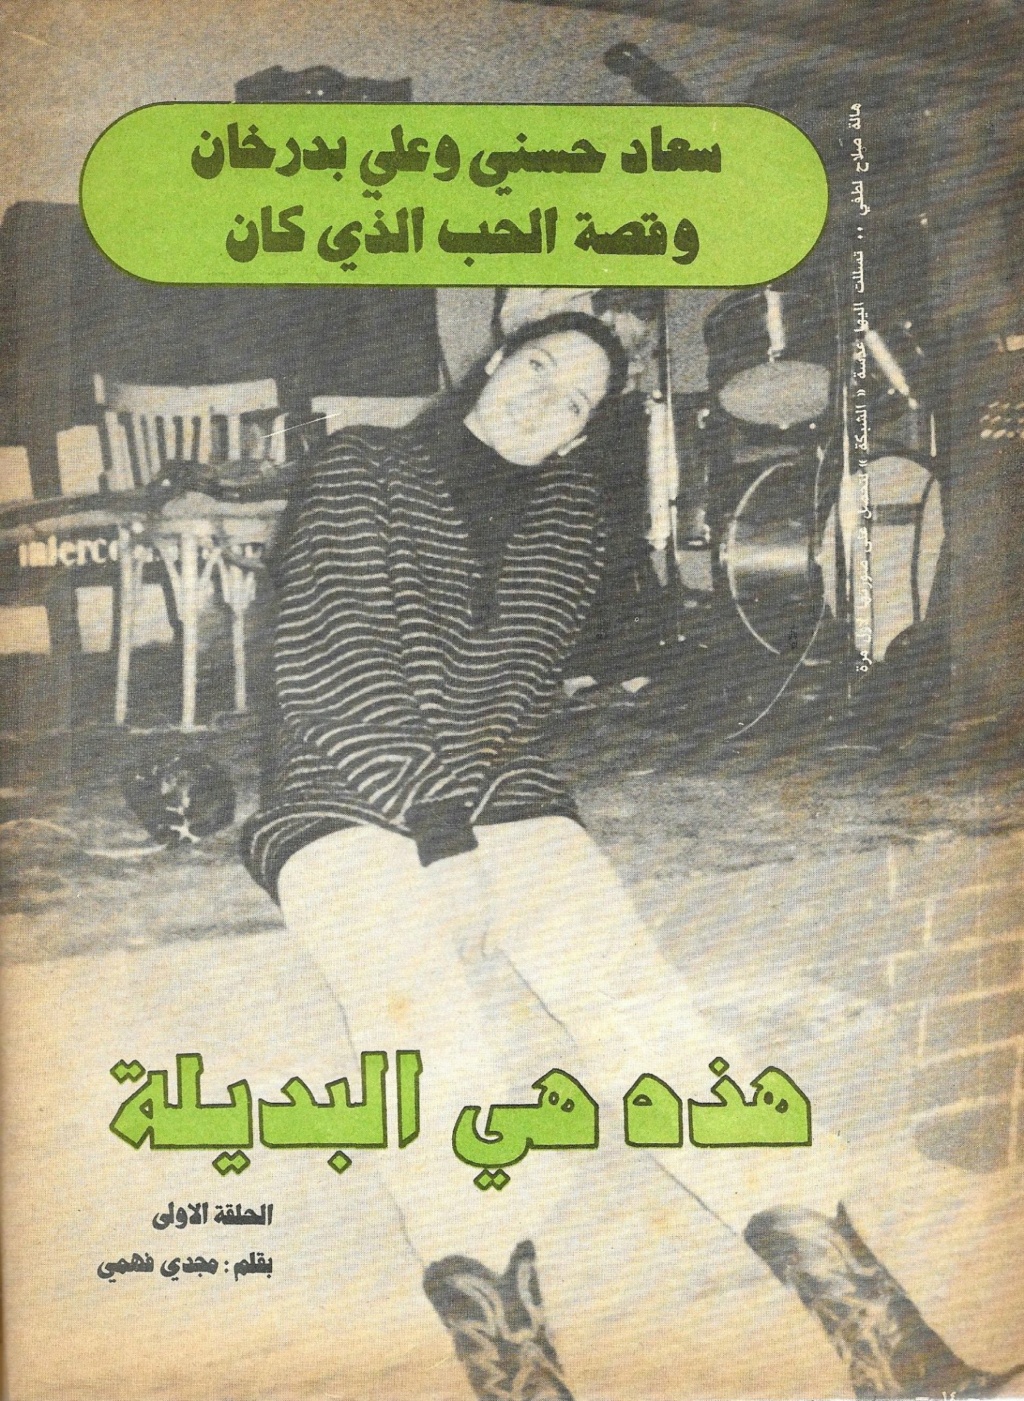 بدرخان - مقال صحفي : سعاد حسني وعلي بدرخان وقصة الحب الذي كان 1981 م 145